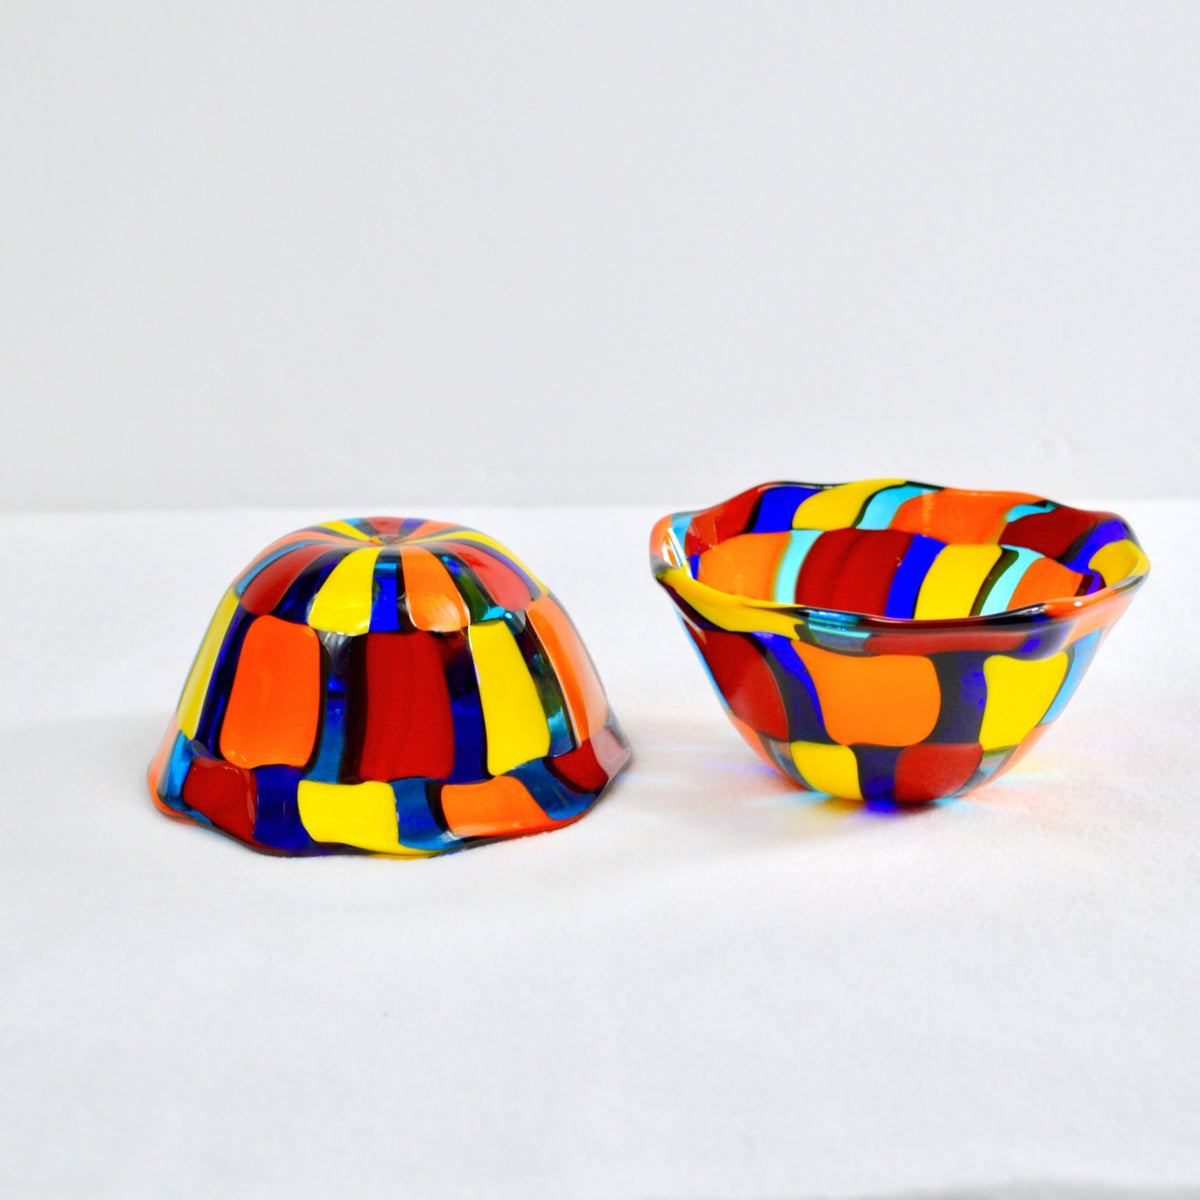 Murano Glass Pazzia Small Bowl, Multi-Colored, Made in Italy - My Italian Decor